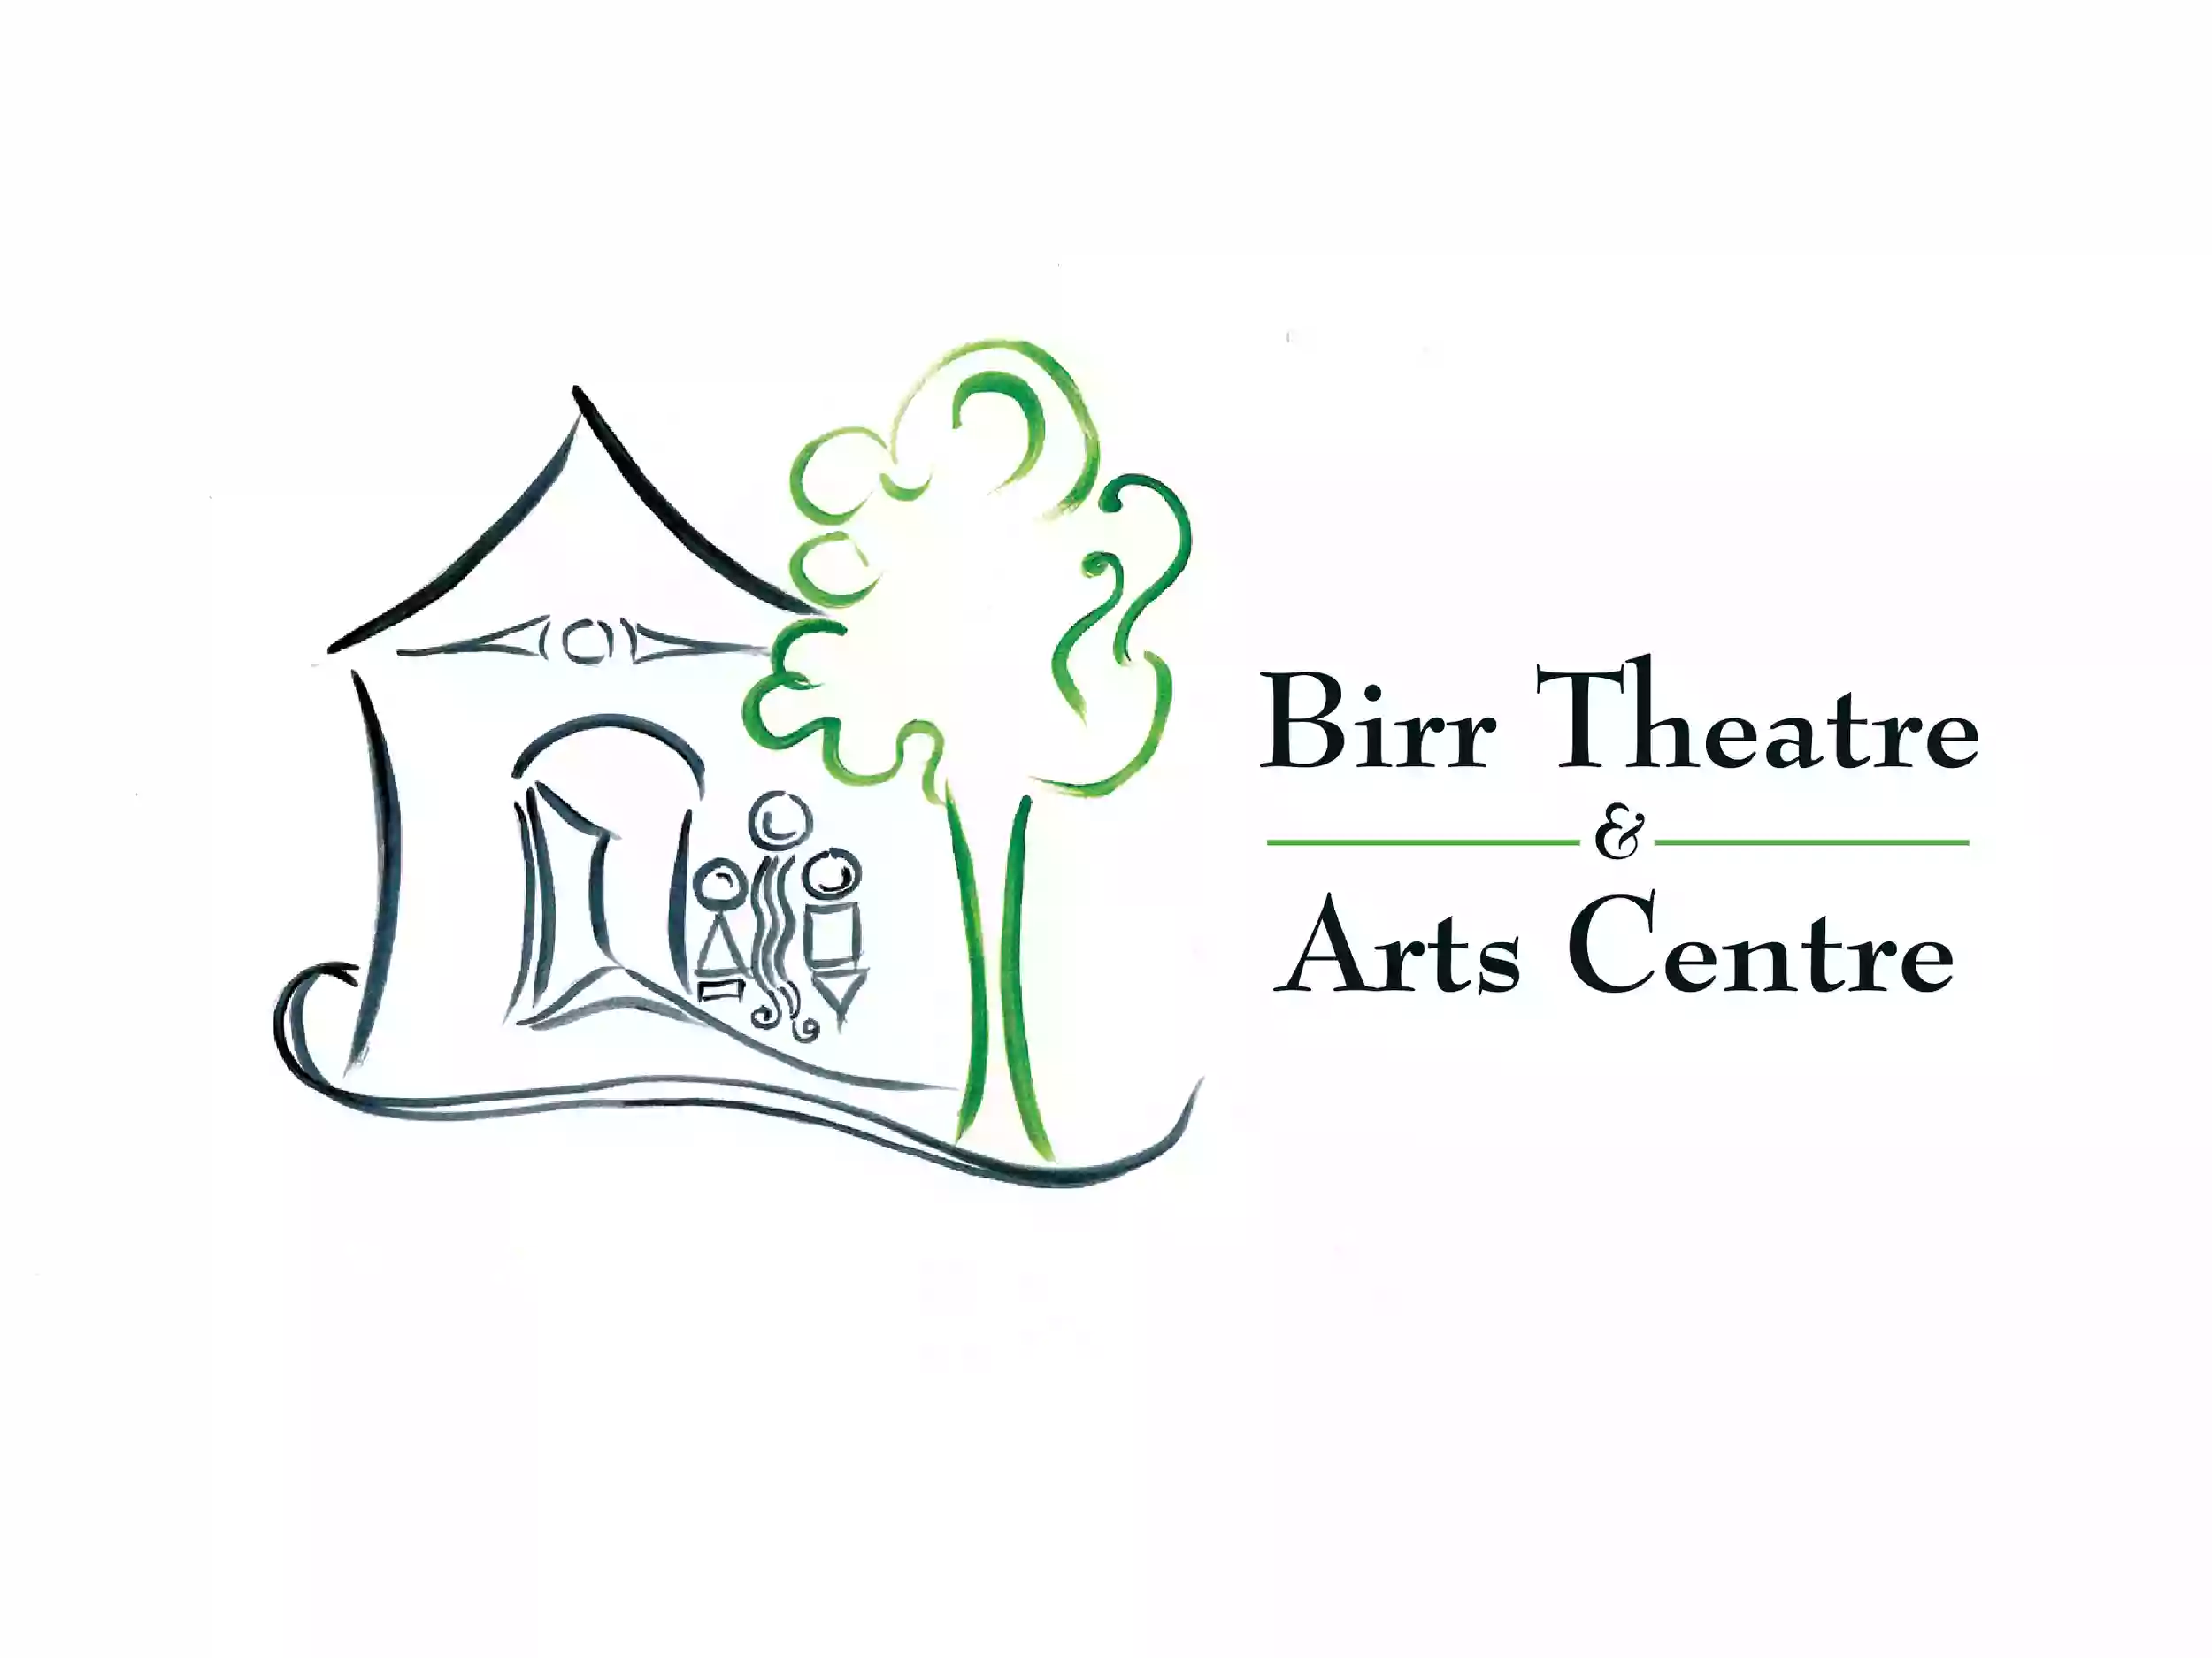 Birr Theatre & Arts Centre